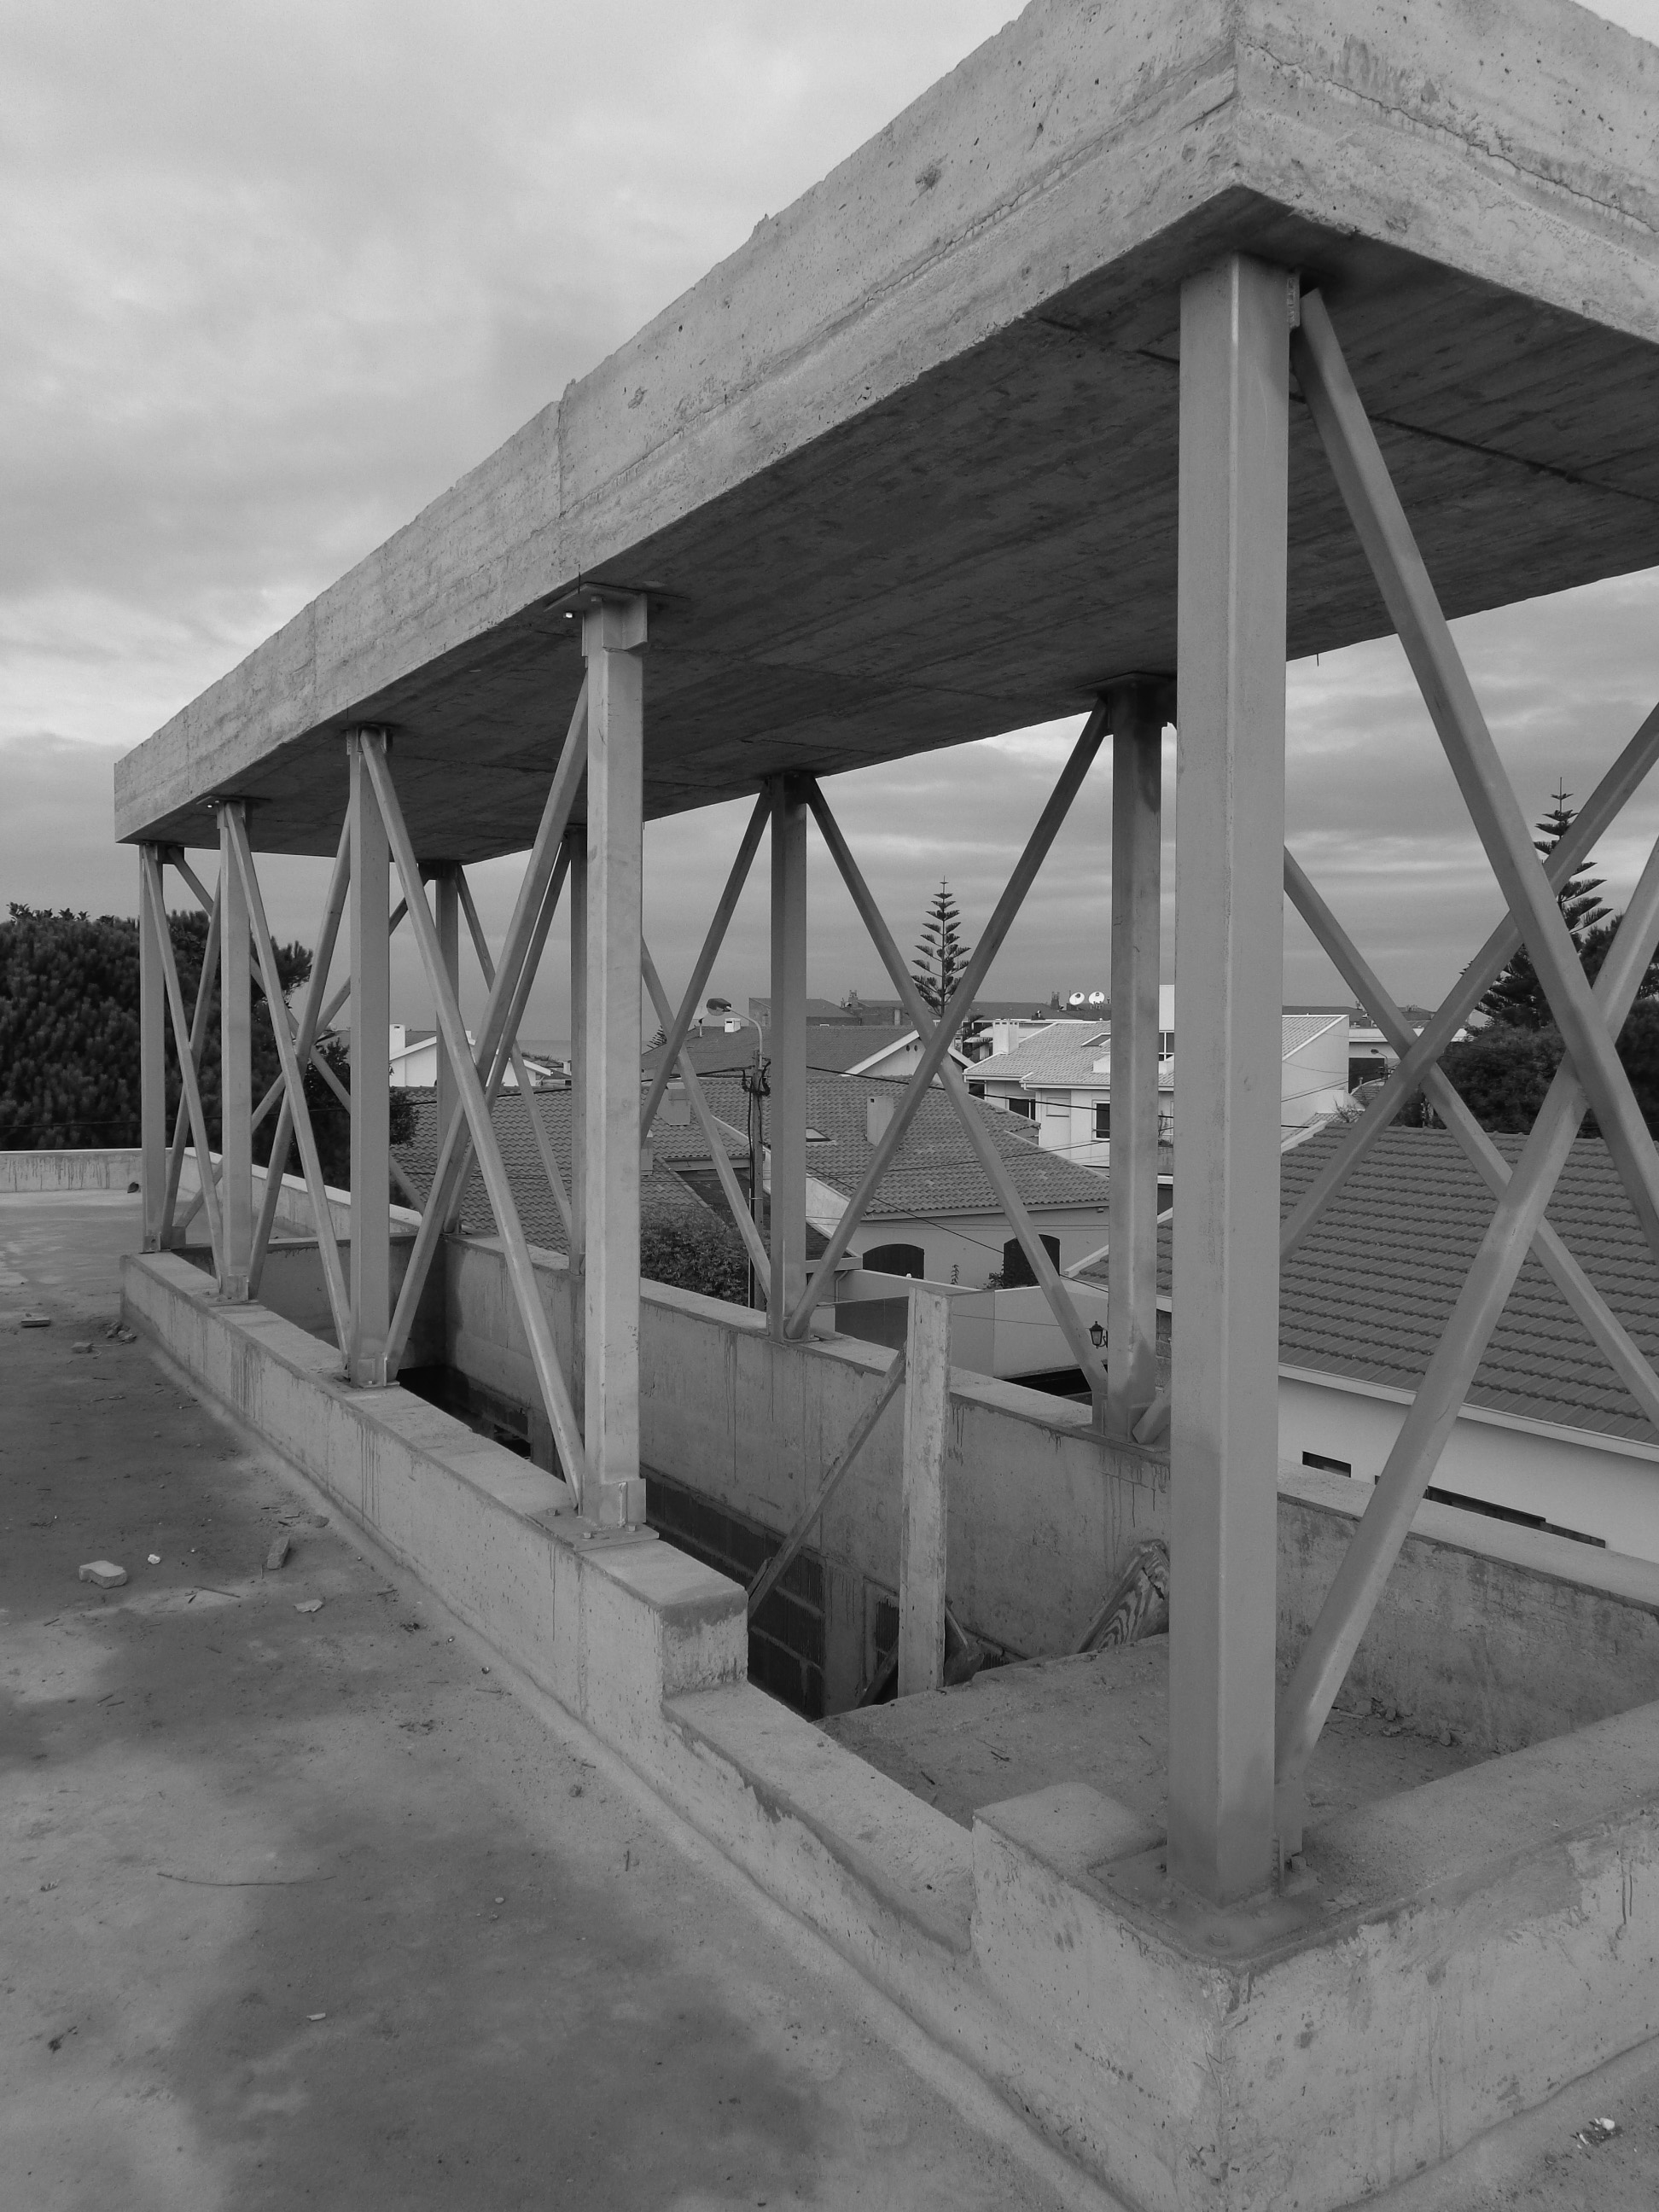 Moradia Alfazema - EVA evolutionary architecture - vila nova de gaia - arquitecto - porto (1).jpg